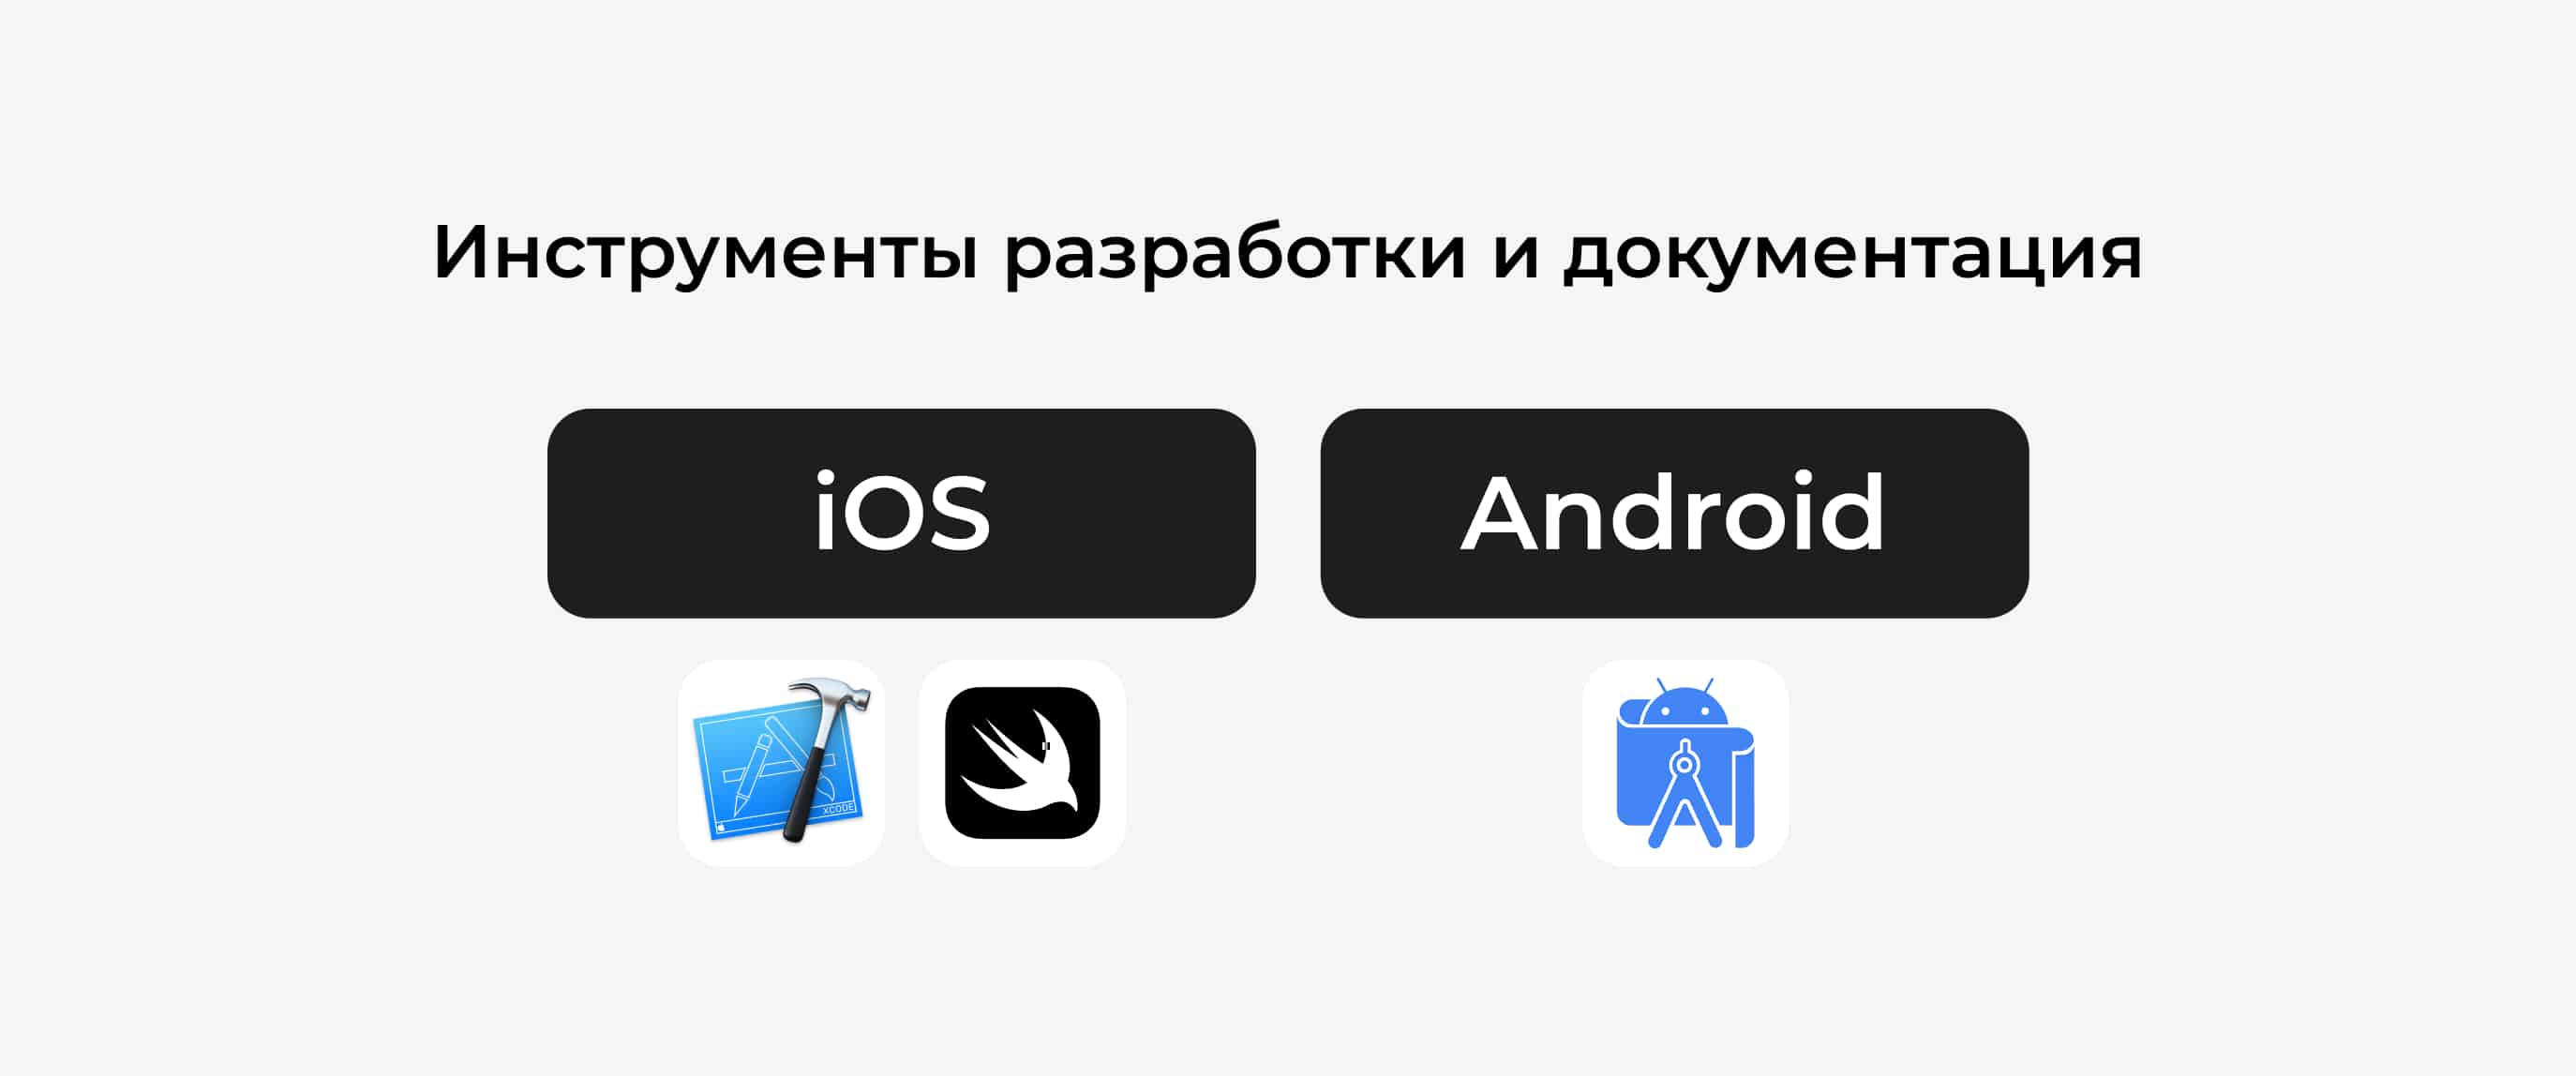 Инструменты разработки на iOS и Android